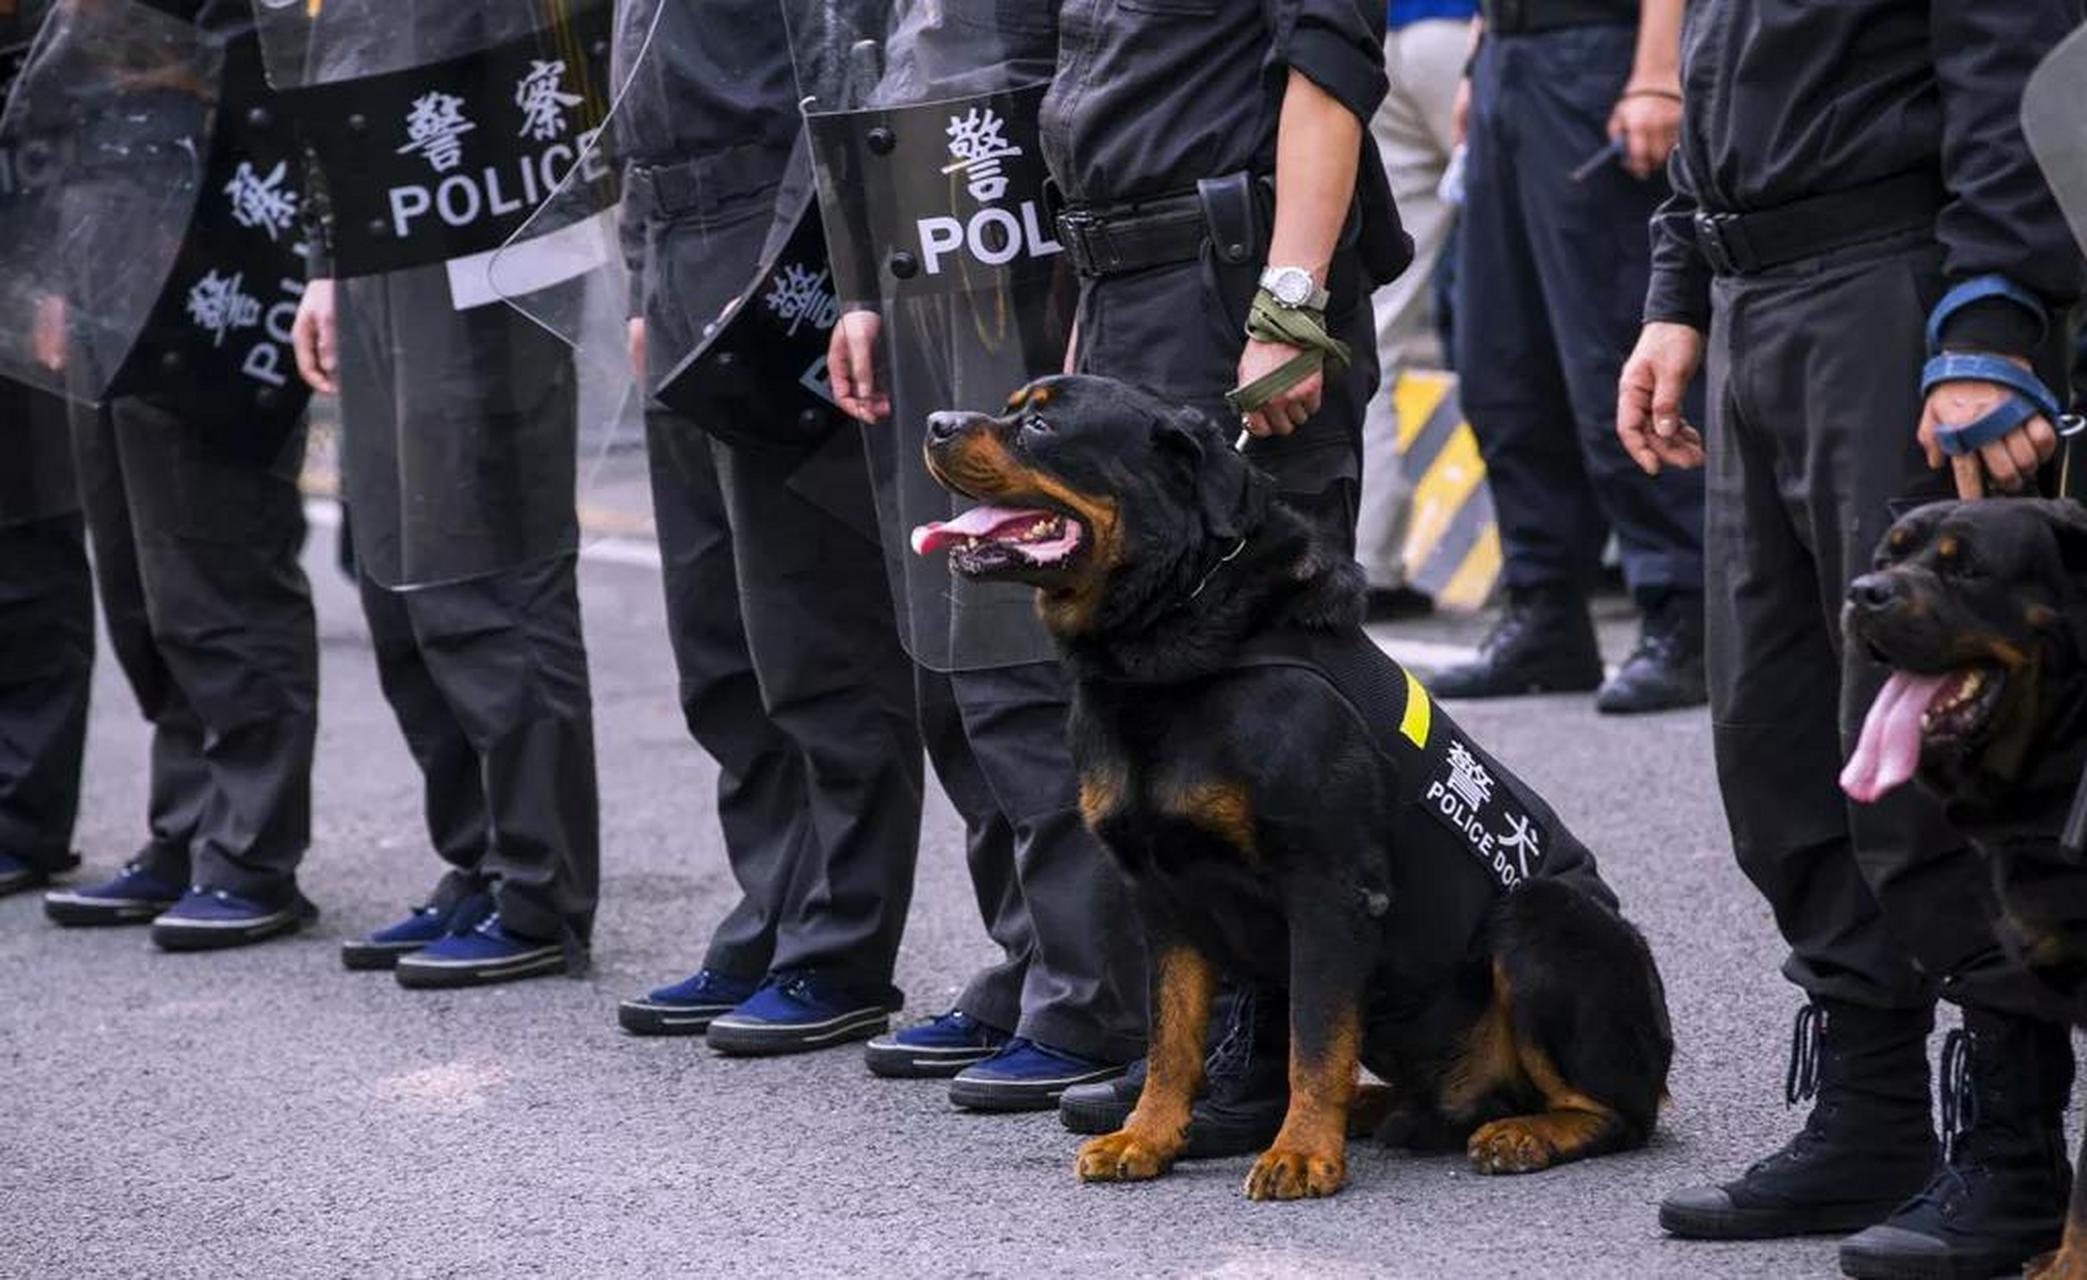 警犬,军犬,缉毒犬和搜救犬等服务犬种大约有一半训练失败.